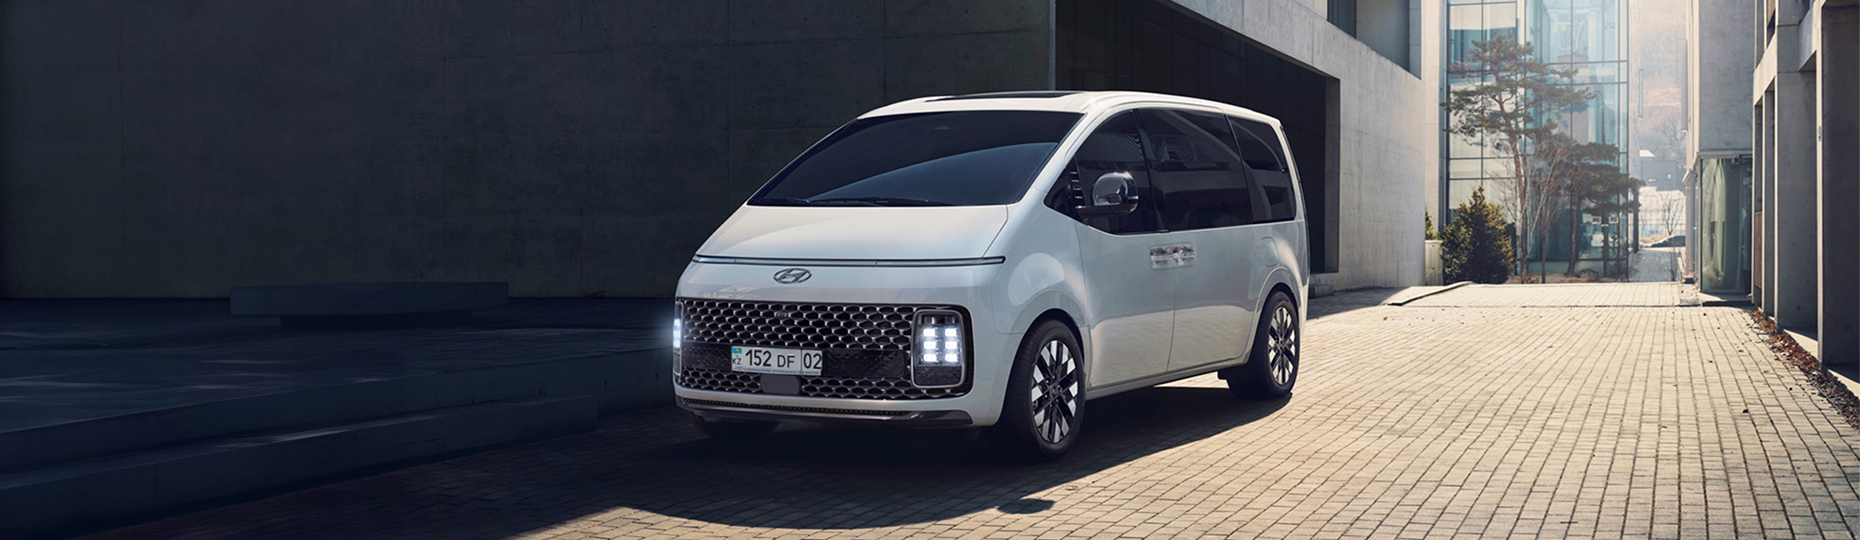 Комфорт нового Hyundai Staria | Официальный дилер в Караганде